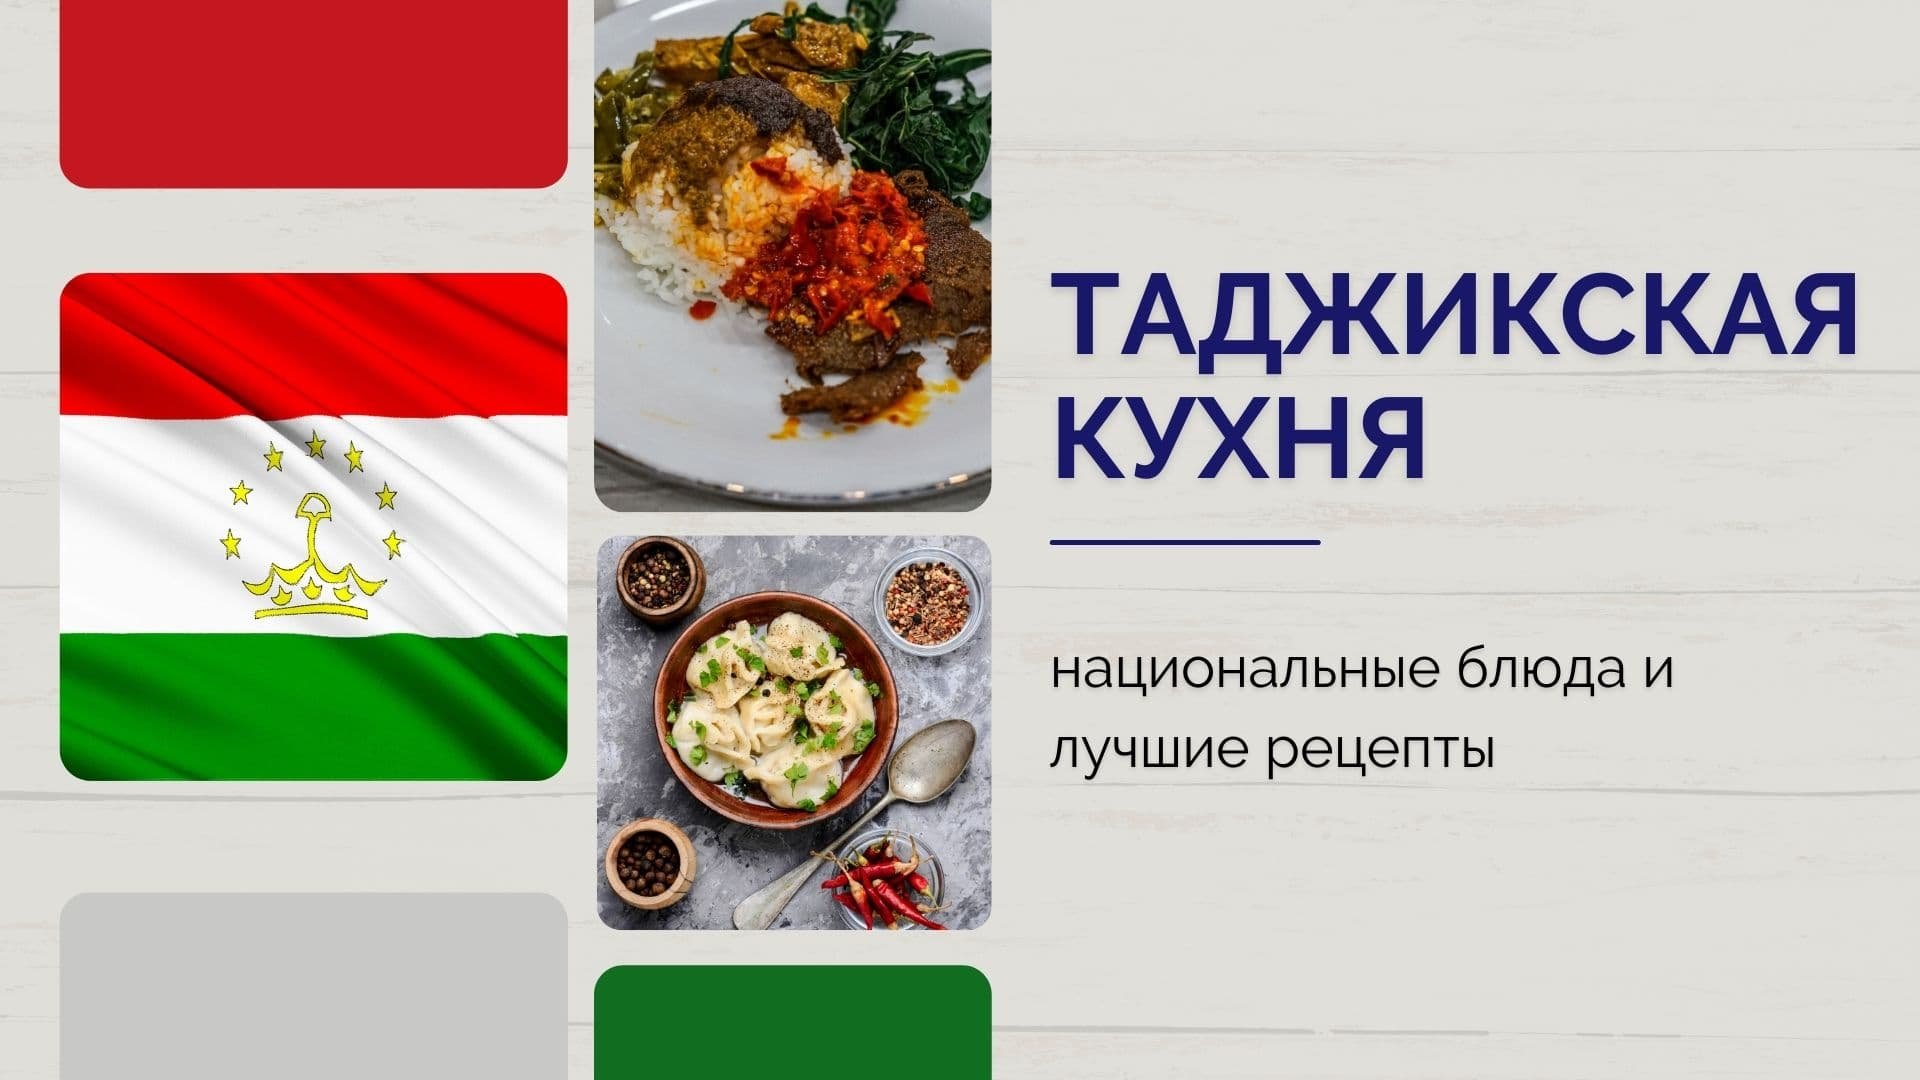 Традиции таджикской кухни. Таджикская Национальная кухня. Национальная блюда Таджикистана кухня. Таджикская кухня национальные блюда. Кухни таджикский блуда.